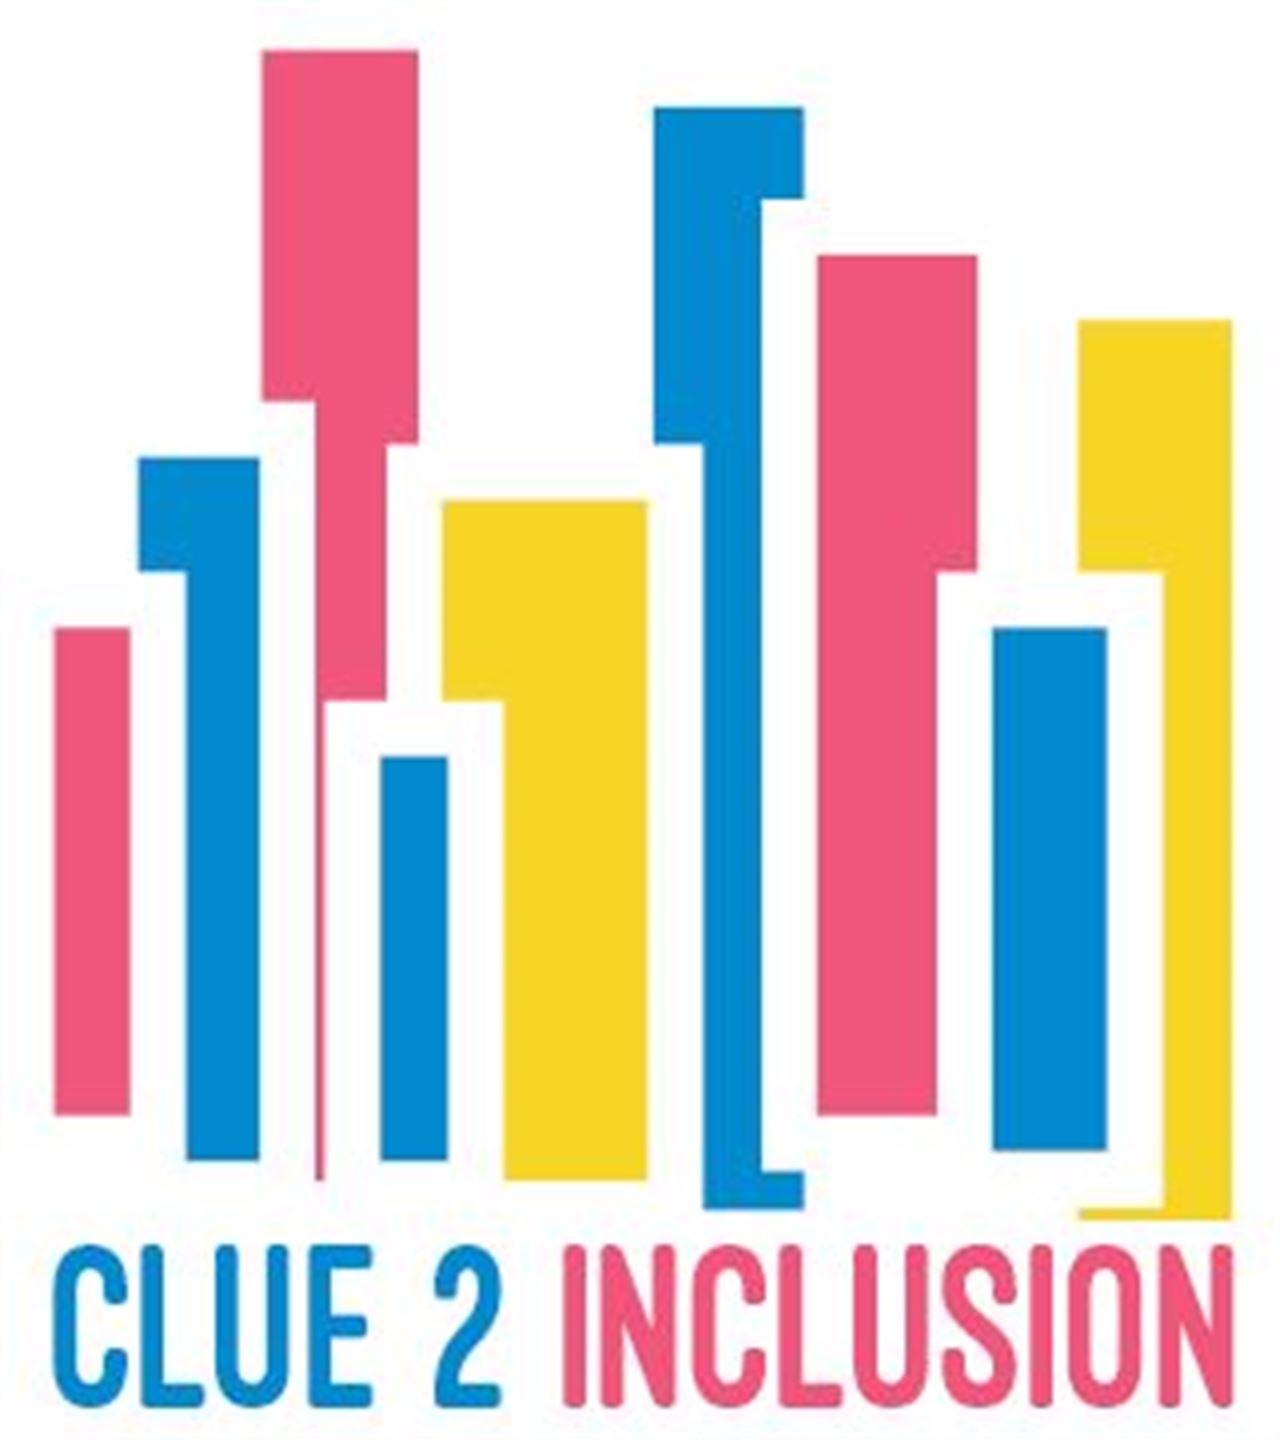 Logo for prosjektet Clue2Inclusion som viser fleire fargerike søyler